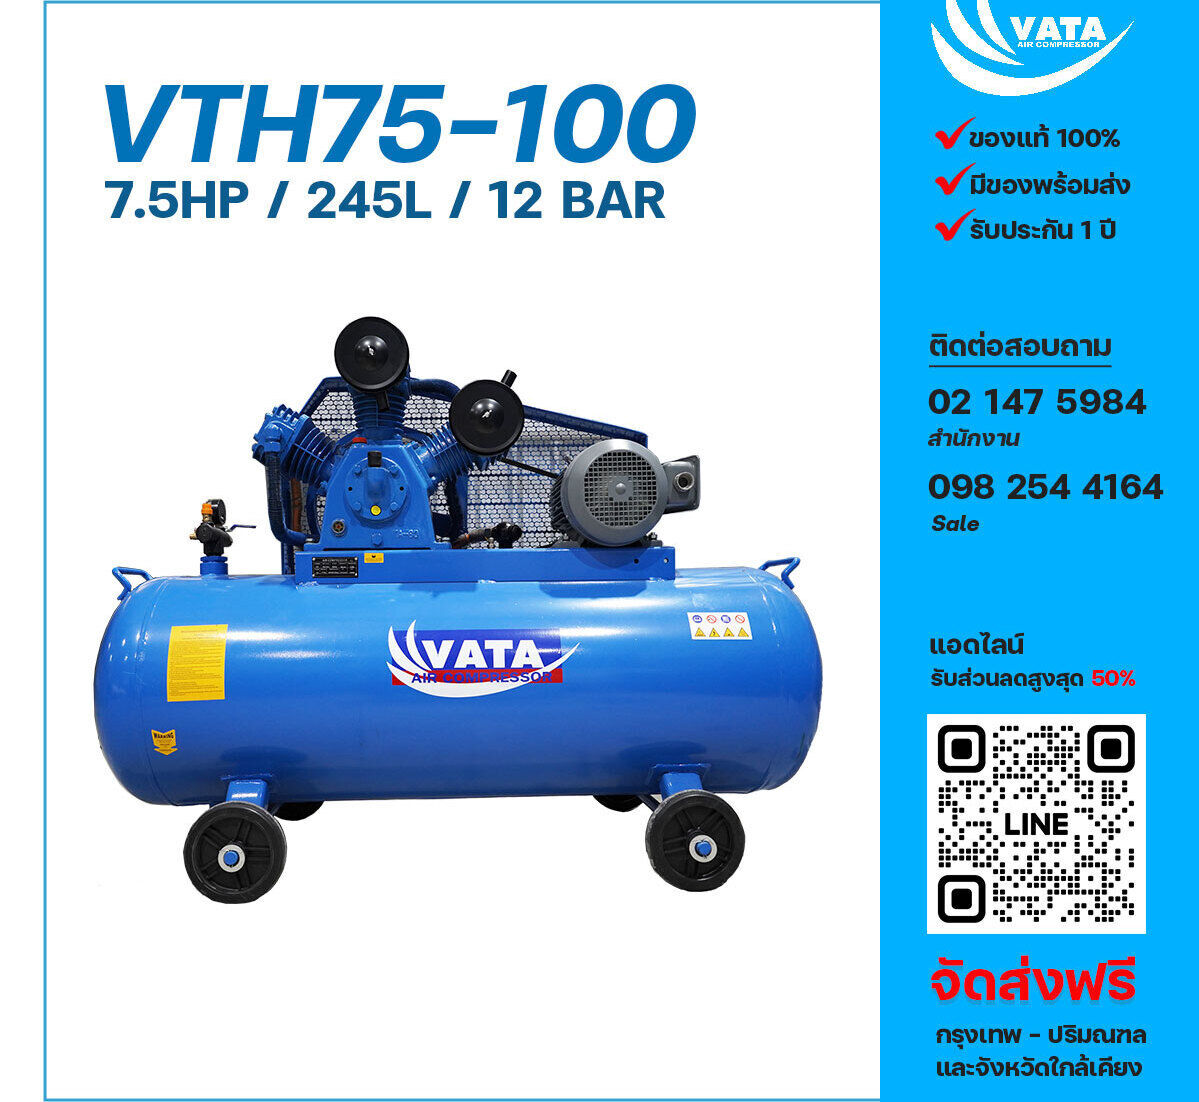 ปั๊มลมวาตะแรงดันสูง VATA Two-Stage VTH75-100 380V ปั๊มลมลูกสูบ ขนาด 3 สูบ 7.5 แรงม้า 245 ลิตร VATA พร้อมมอเตอร์ ไฟ 380V ส่งฟรี กรุงเทพฯ-ปริมณฑล รับประกัน 1 ปี